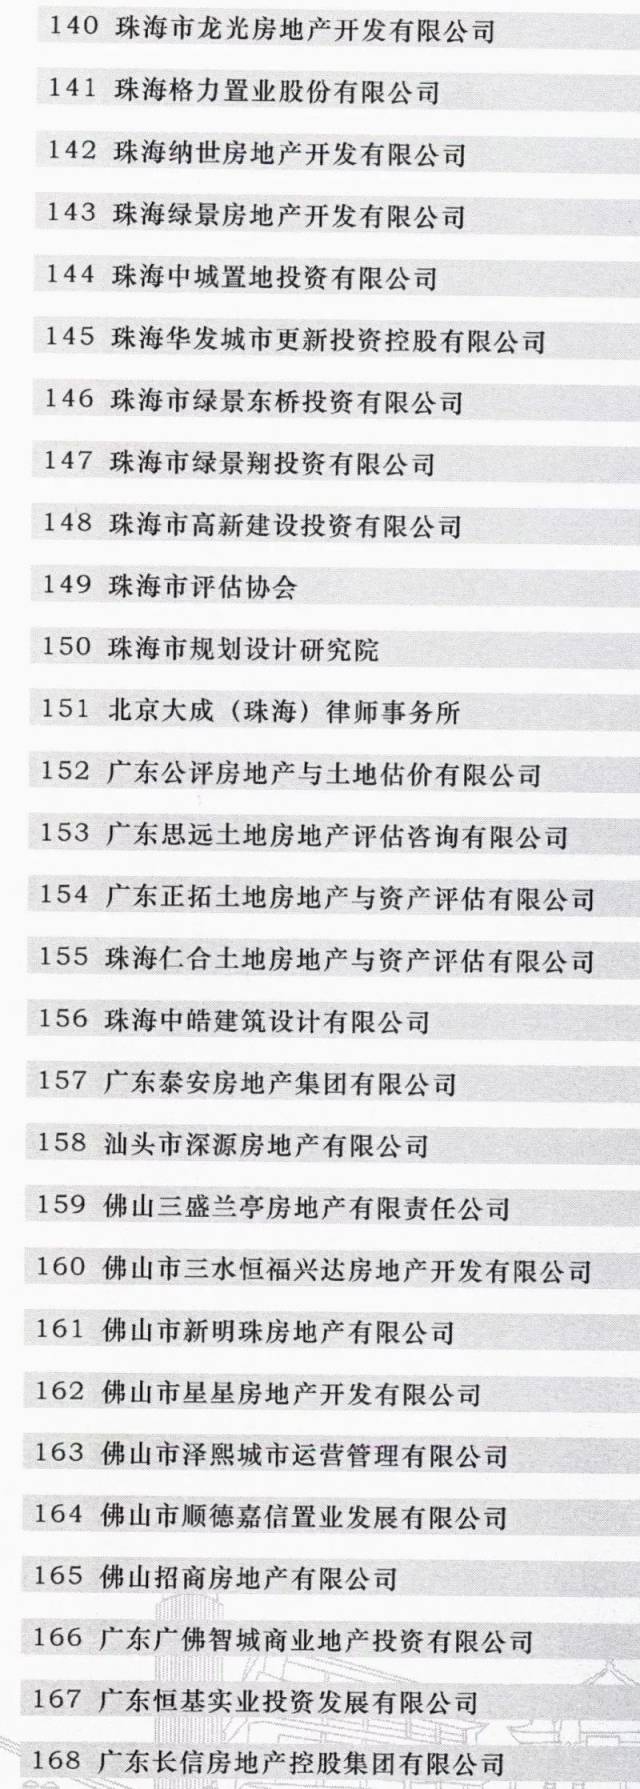 广东成立全国首个省级“三旧”改造协会  江门博富地产成为首批会员单位(图6)